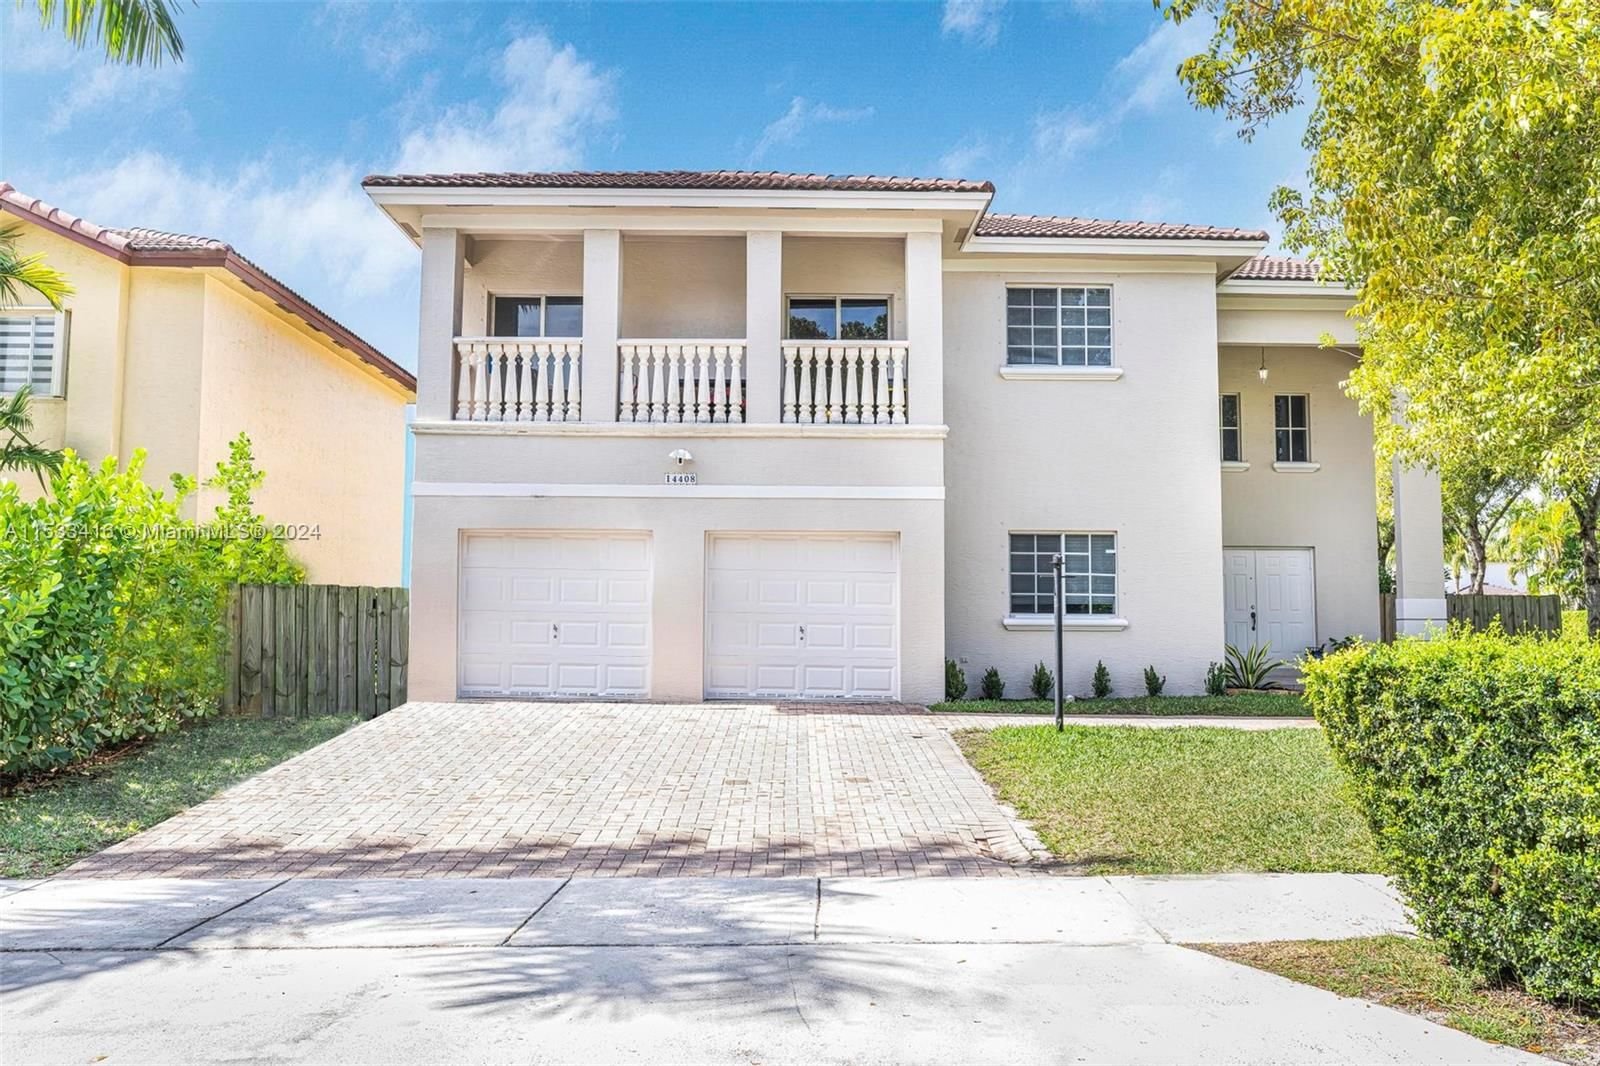 Real estate property located at 14408 158th Path, Miami-Dade County, MILON VENTURE, Miami, FL